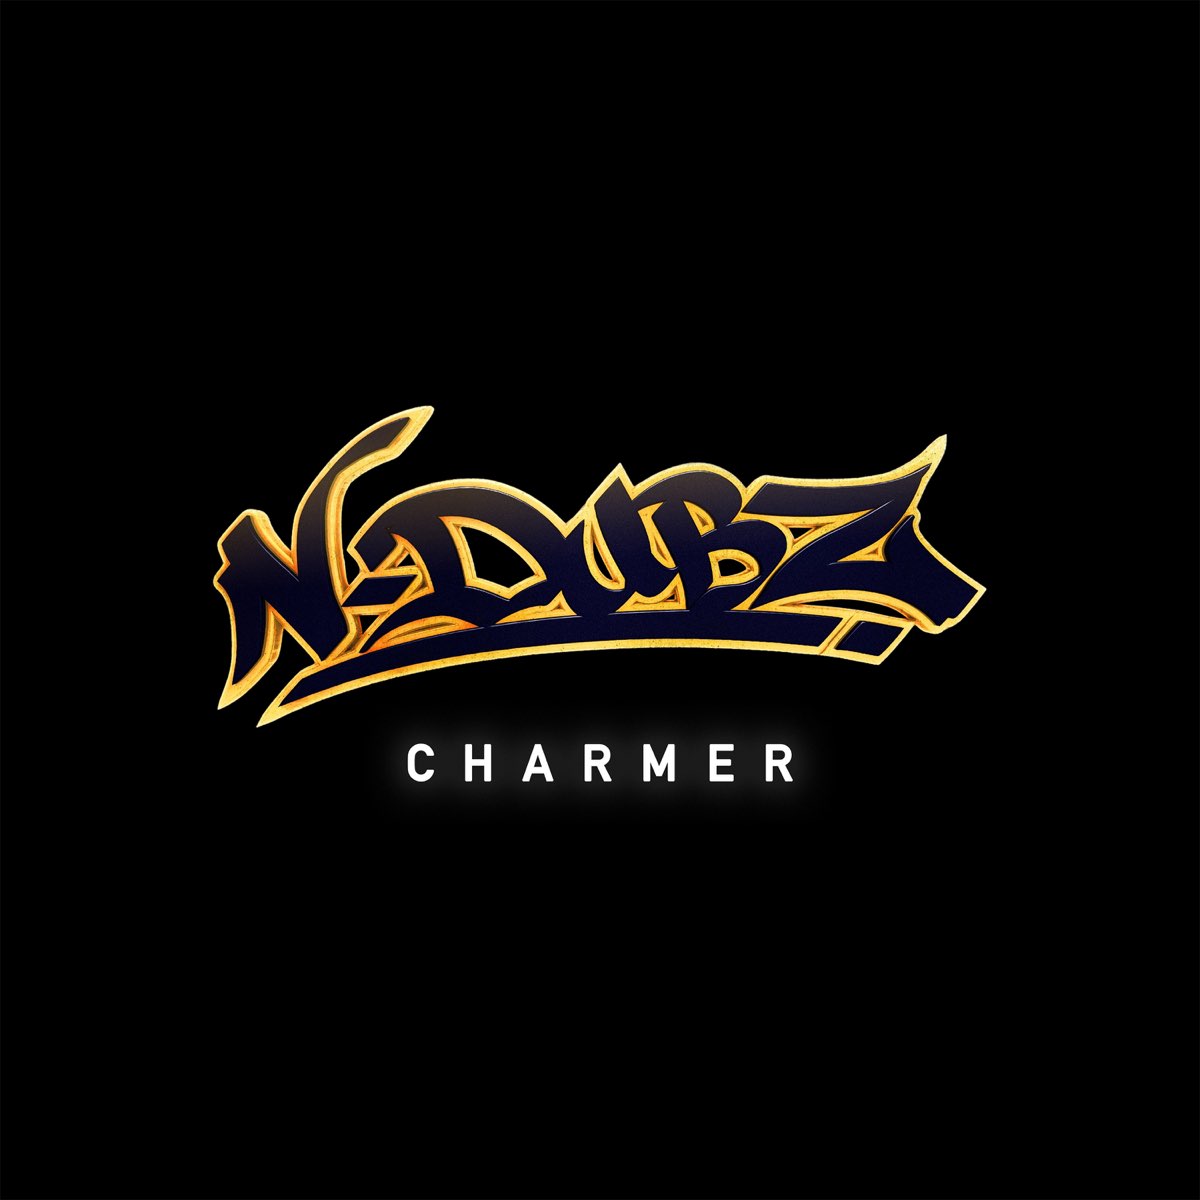 N-Dubz Charmer cover artwork